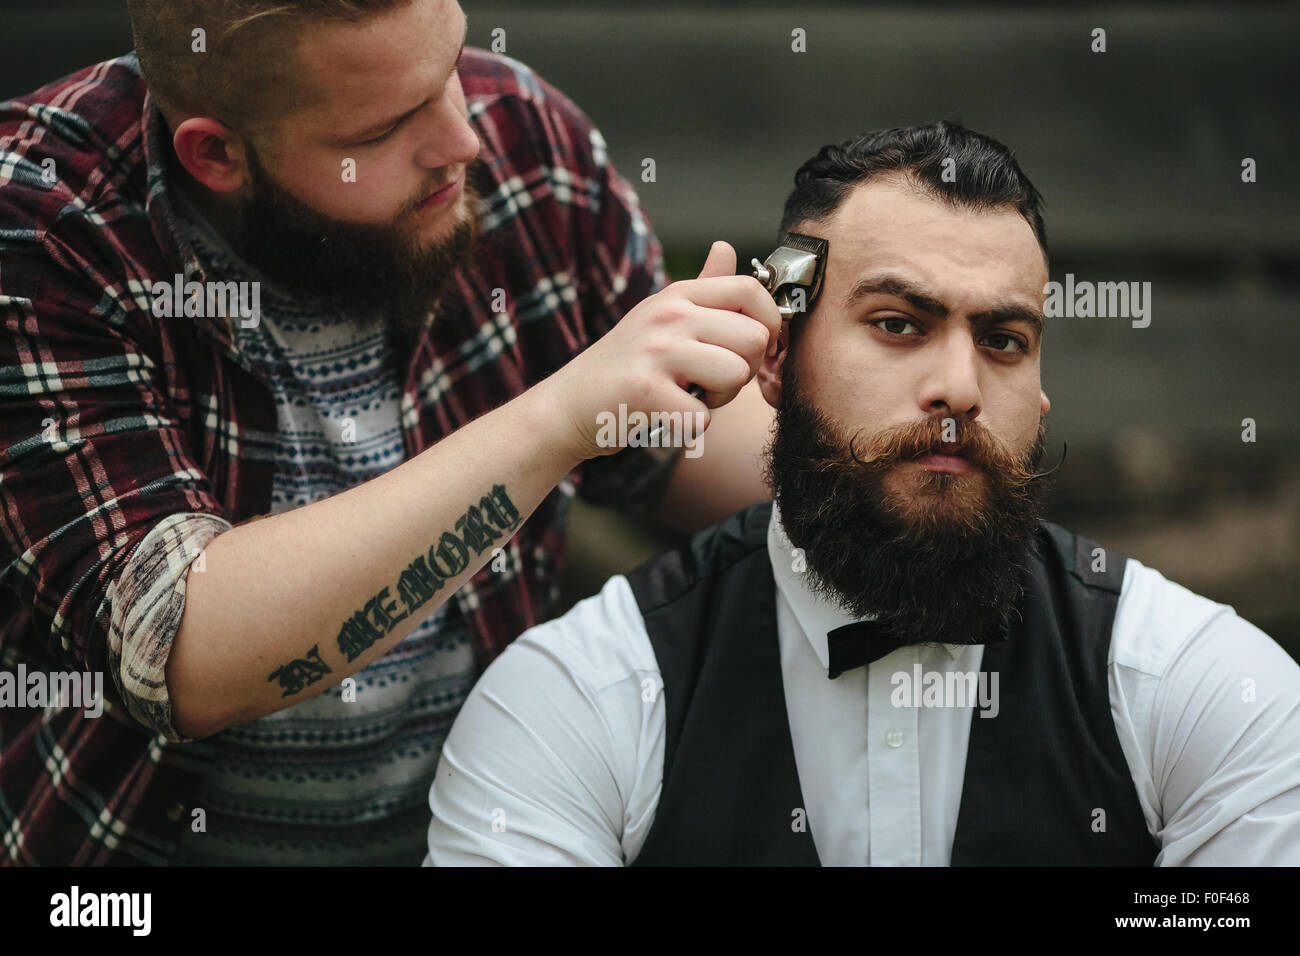 Hombre caucásico tratando de afeitarse la cabeza con una afeitadora  eléctrica. Un hombre brutal calvo sostiene una navaja en su mano y afeita  la barba sobre un fondo metálico Fotografía de stock 